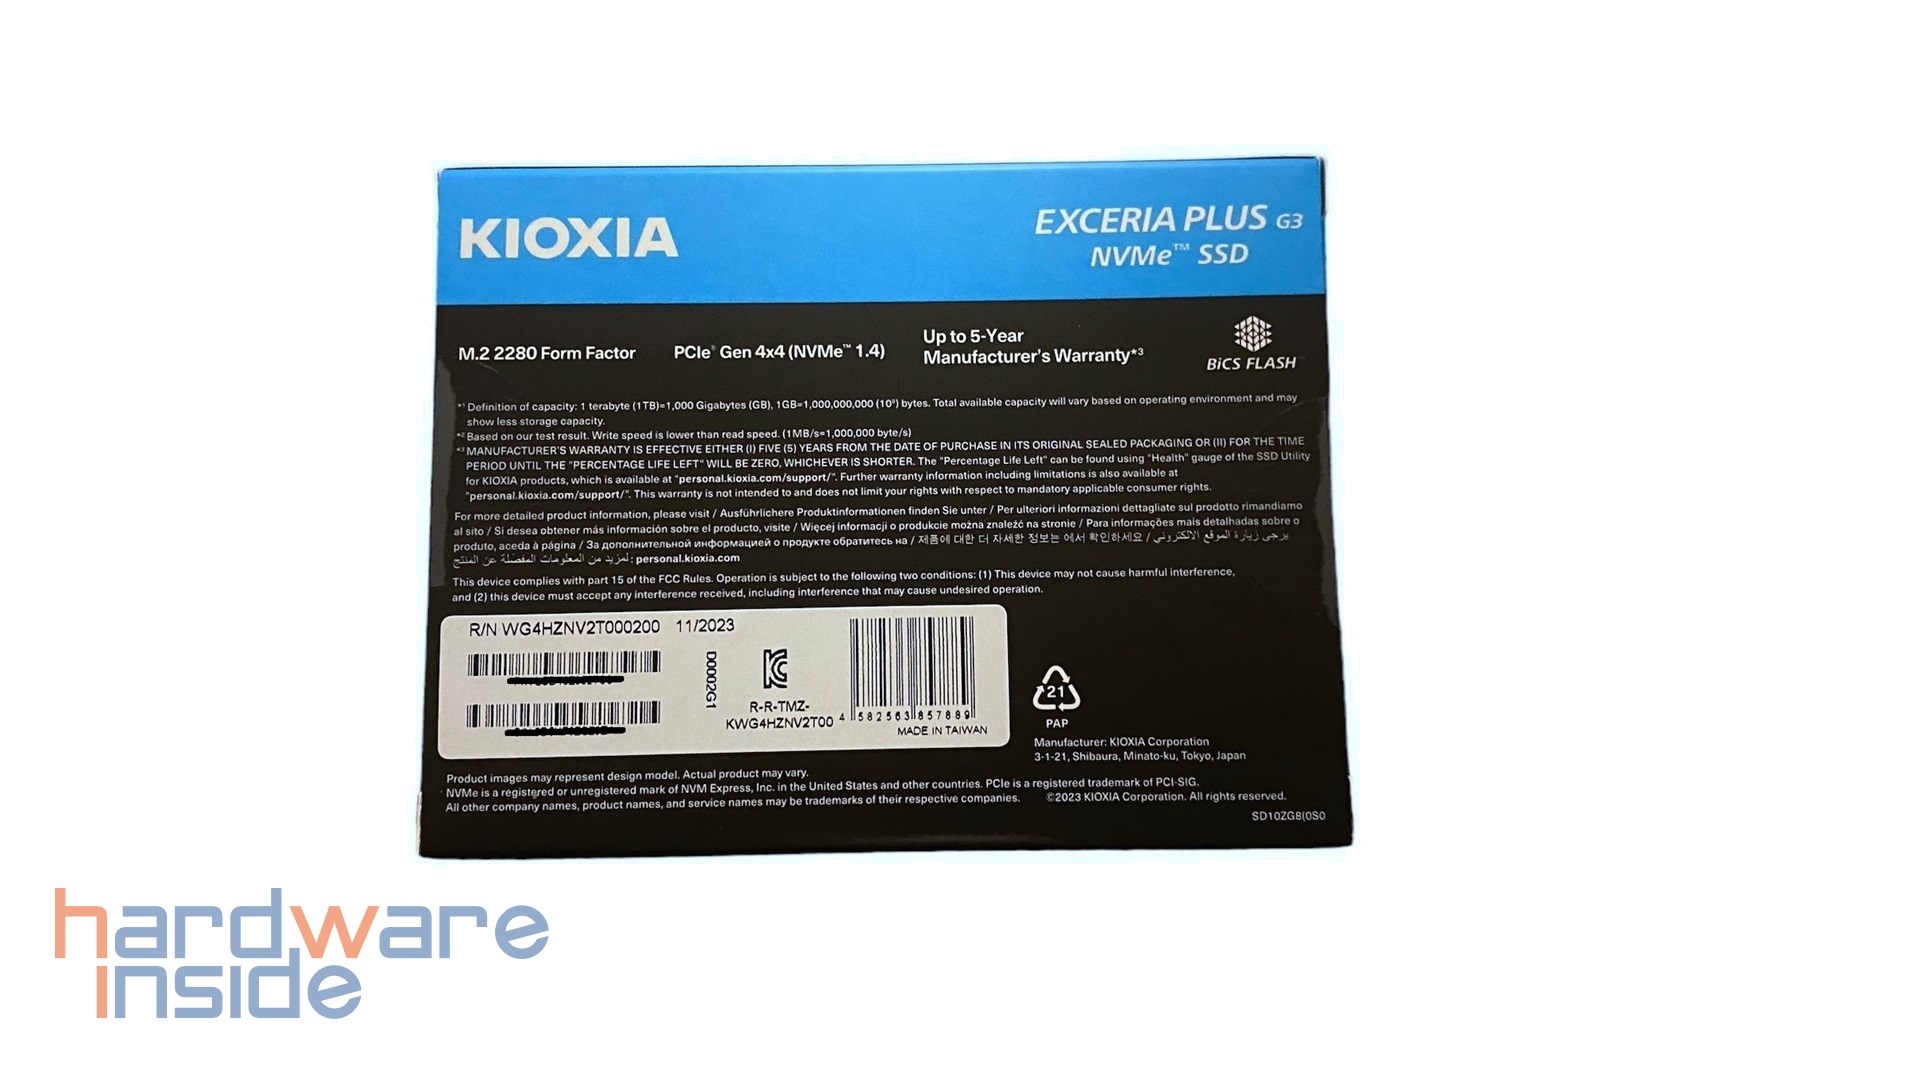 kioxia-exceria-plus-g3-verpackung (3).jpg